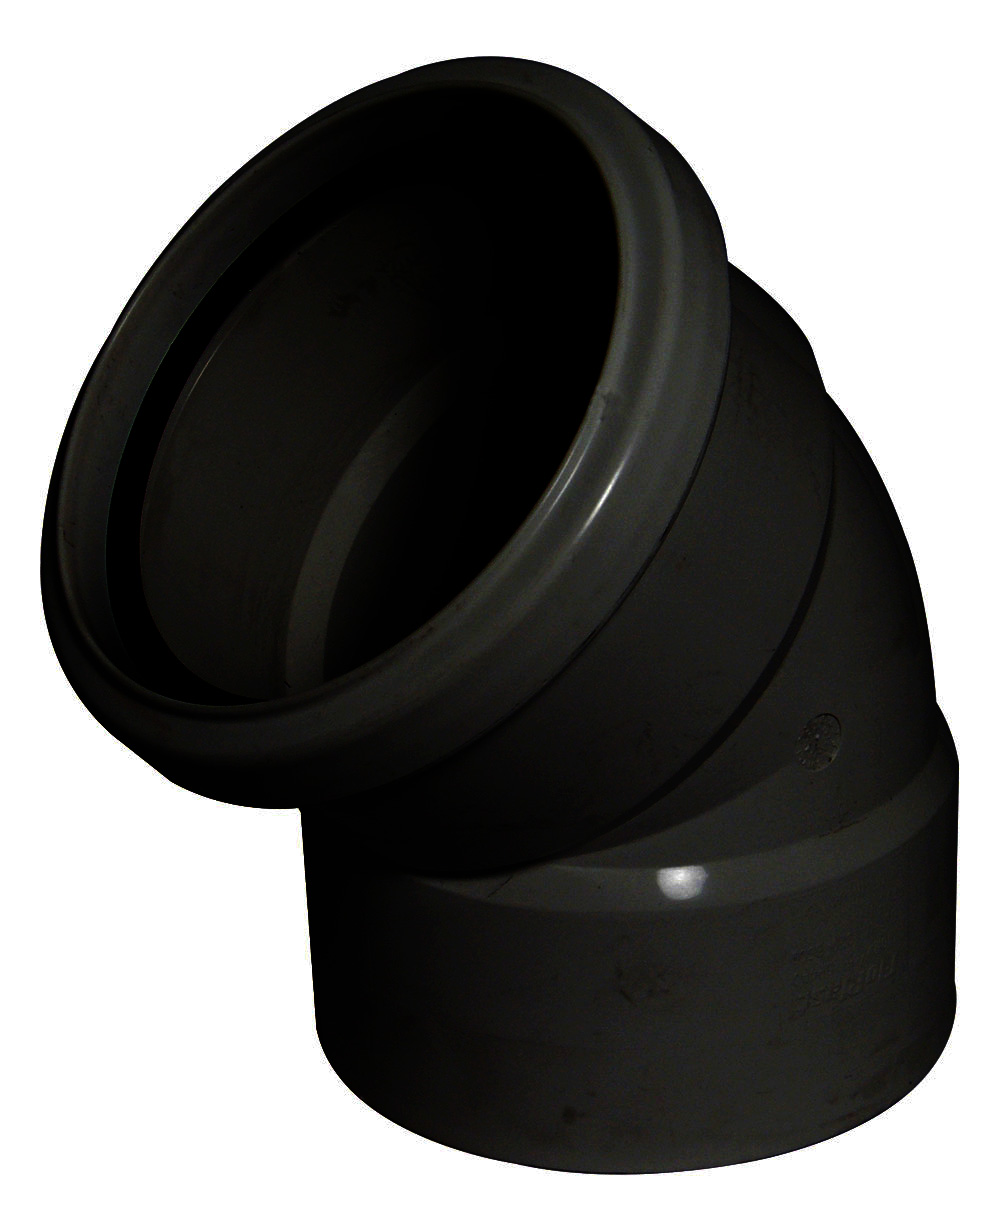 Floplast SP440BL 110mm/4 Inch Ring Seal Soil System - 135 Degree Offset Bend Double Socket - Black